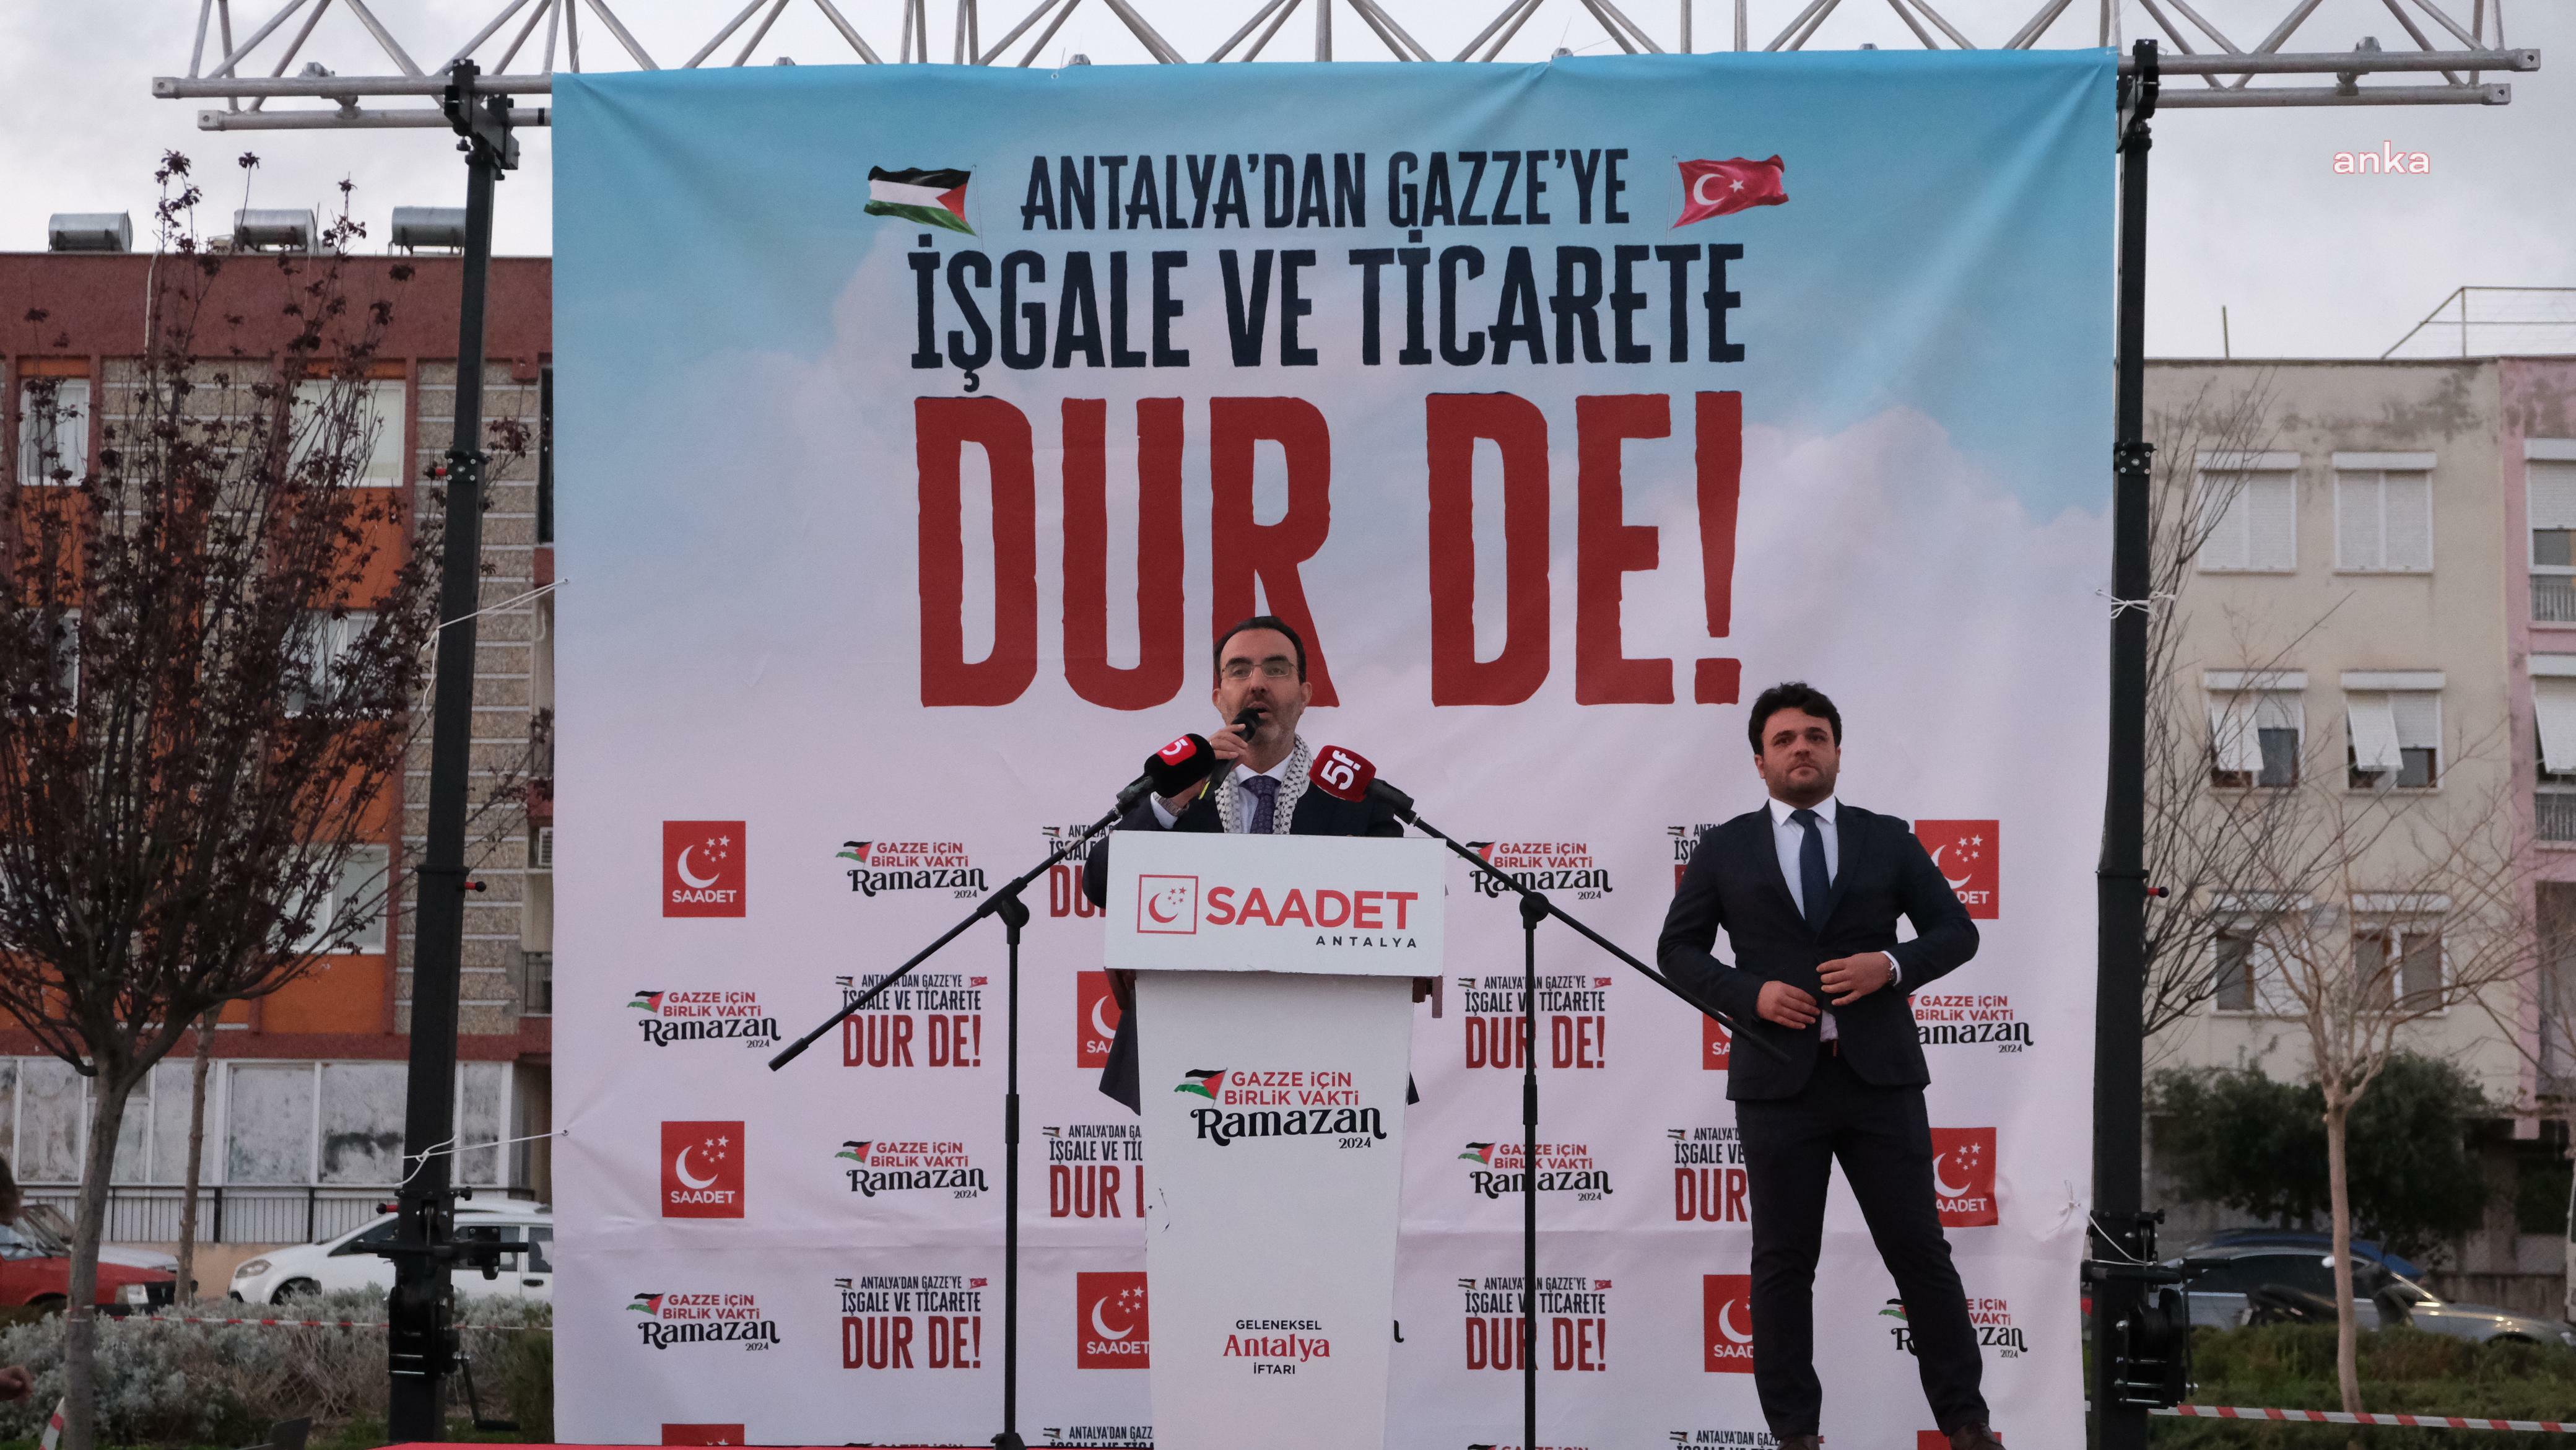 Saadet Partisi Antalya İl Başkanlığı'ndan AK Parti'ye karşı sert tepki: 'Ticarete son ver!'